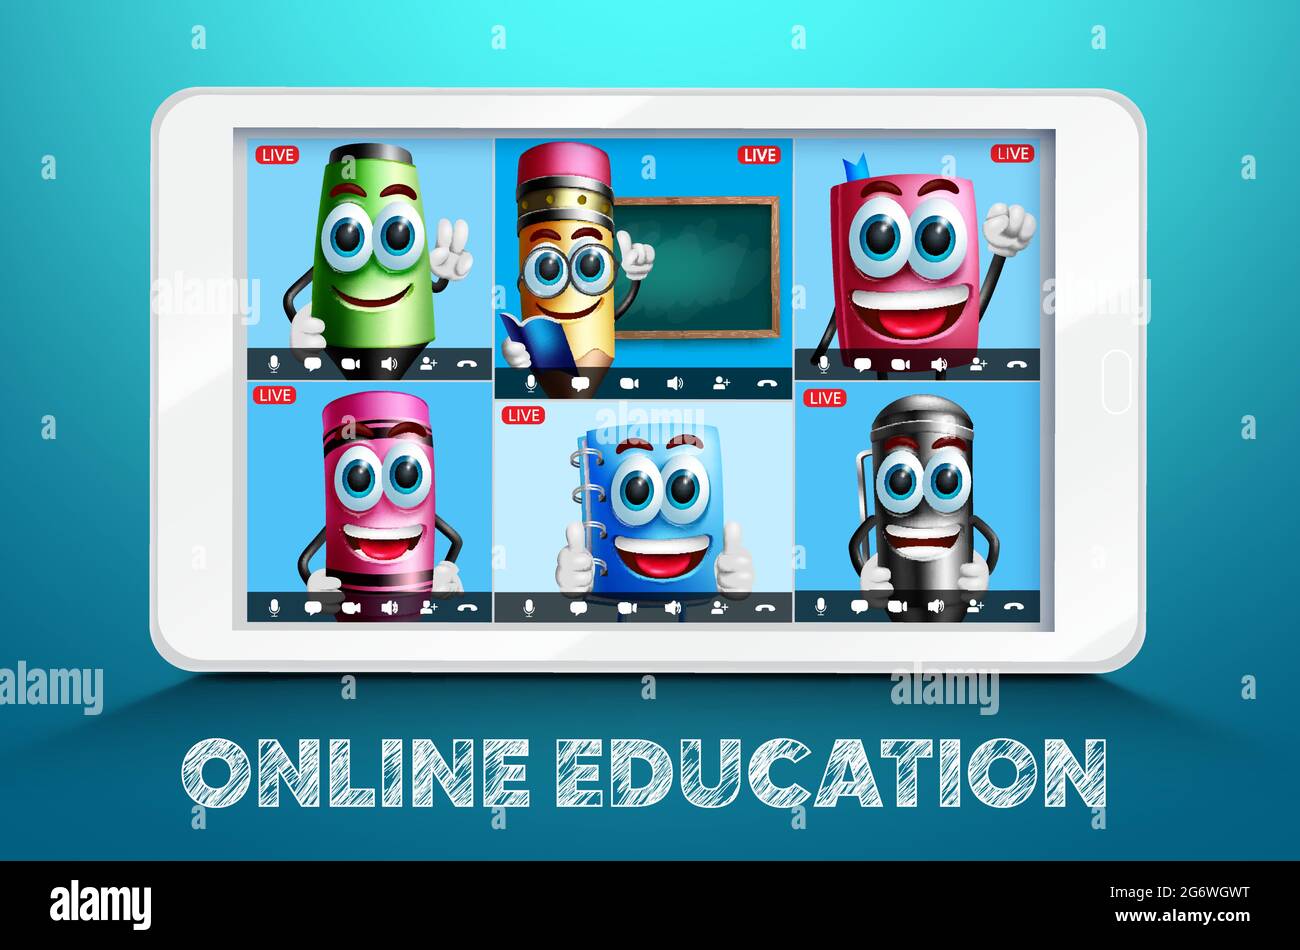 Online-Bildung Schule Video-Konferenz Vektor-Design. Online-Bildungstext mit Lerncharakteren auf dem Bildschirm des digitalen Tablets. Stock Vektor